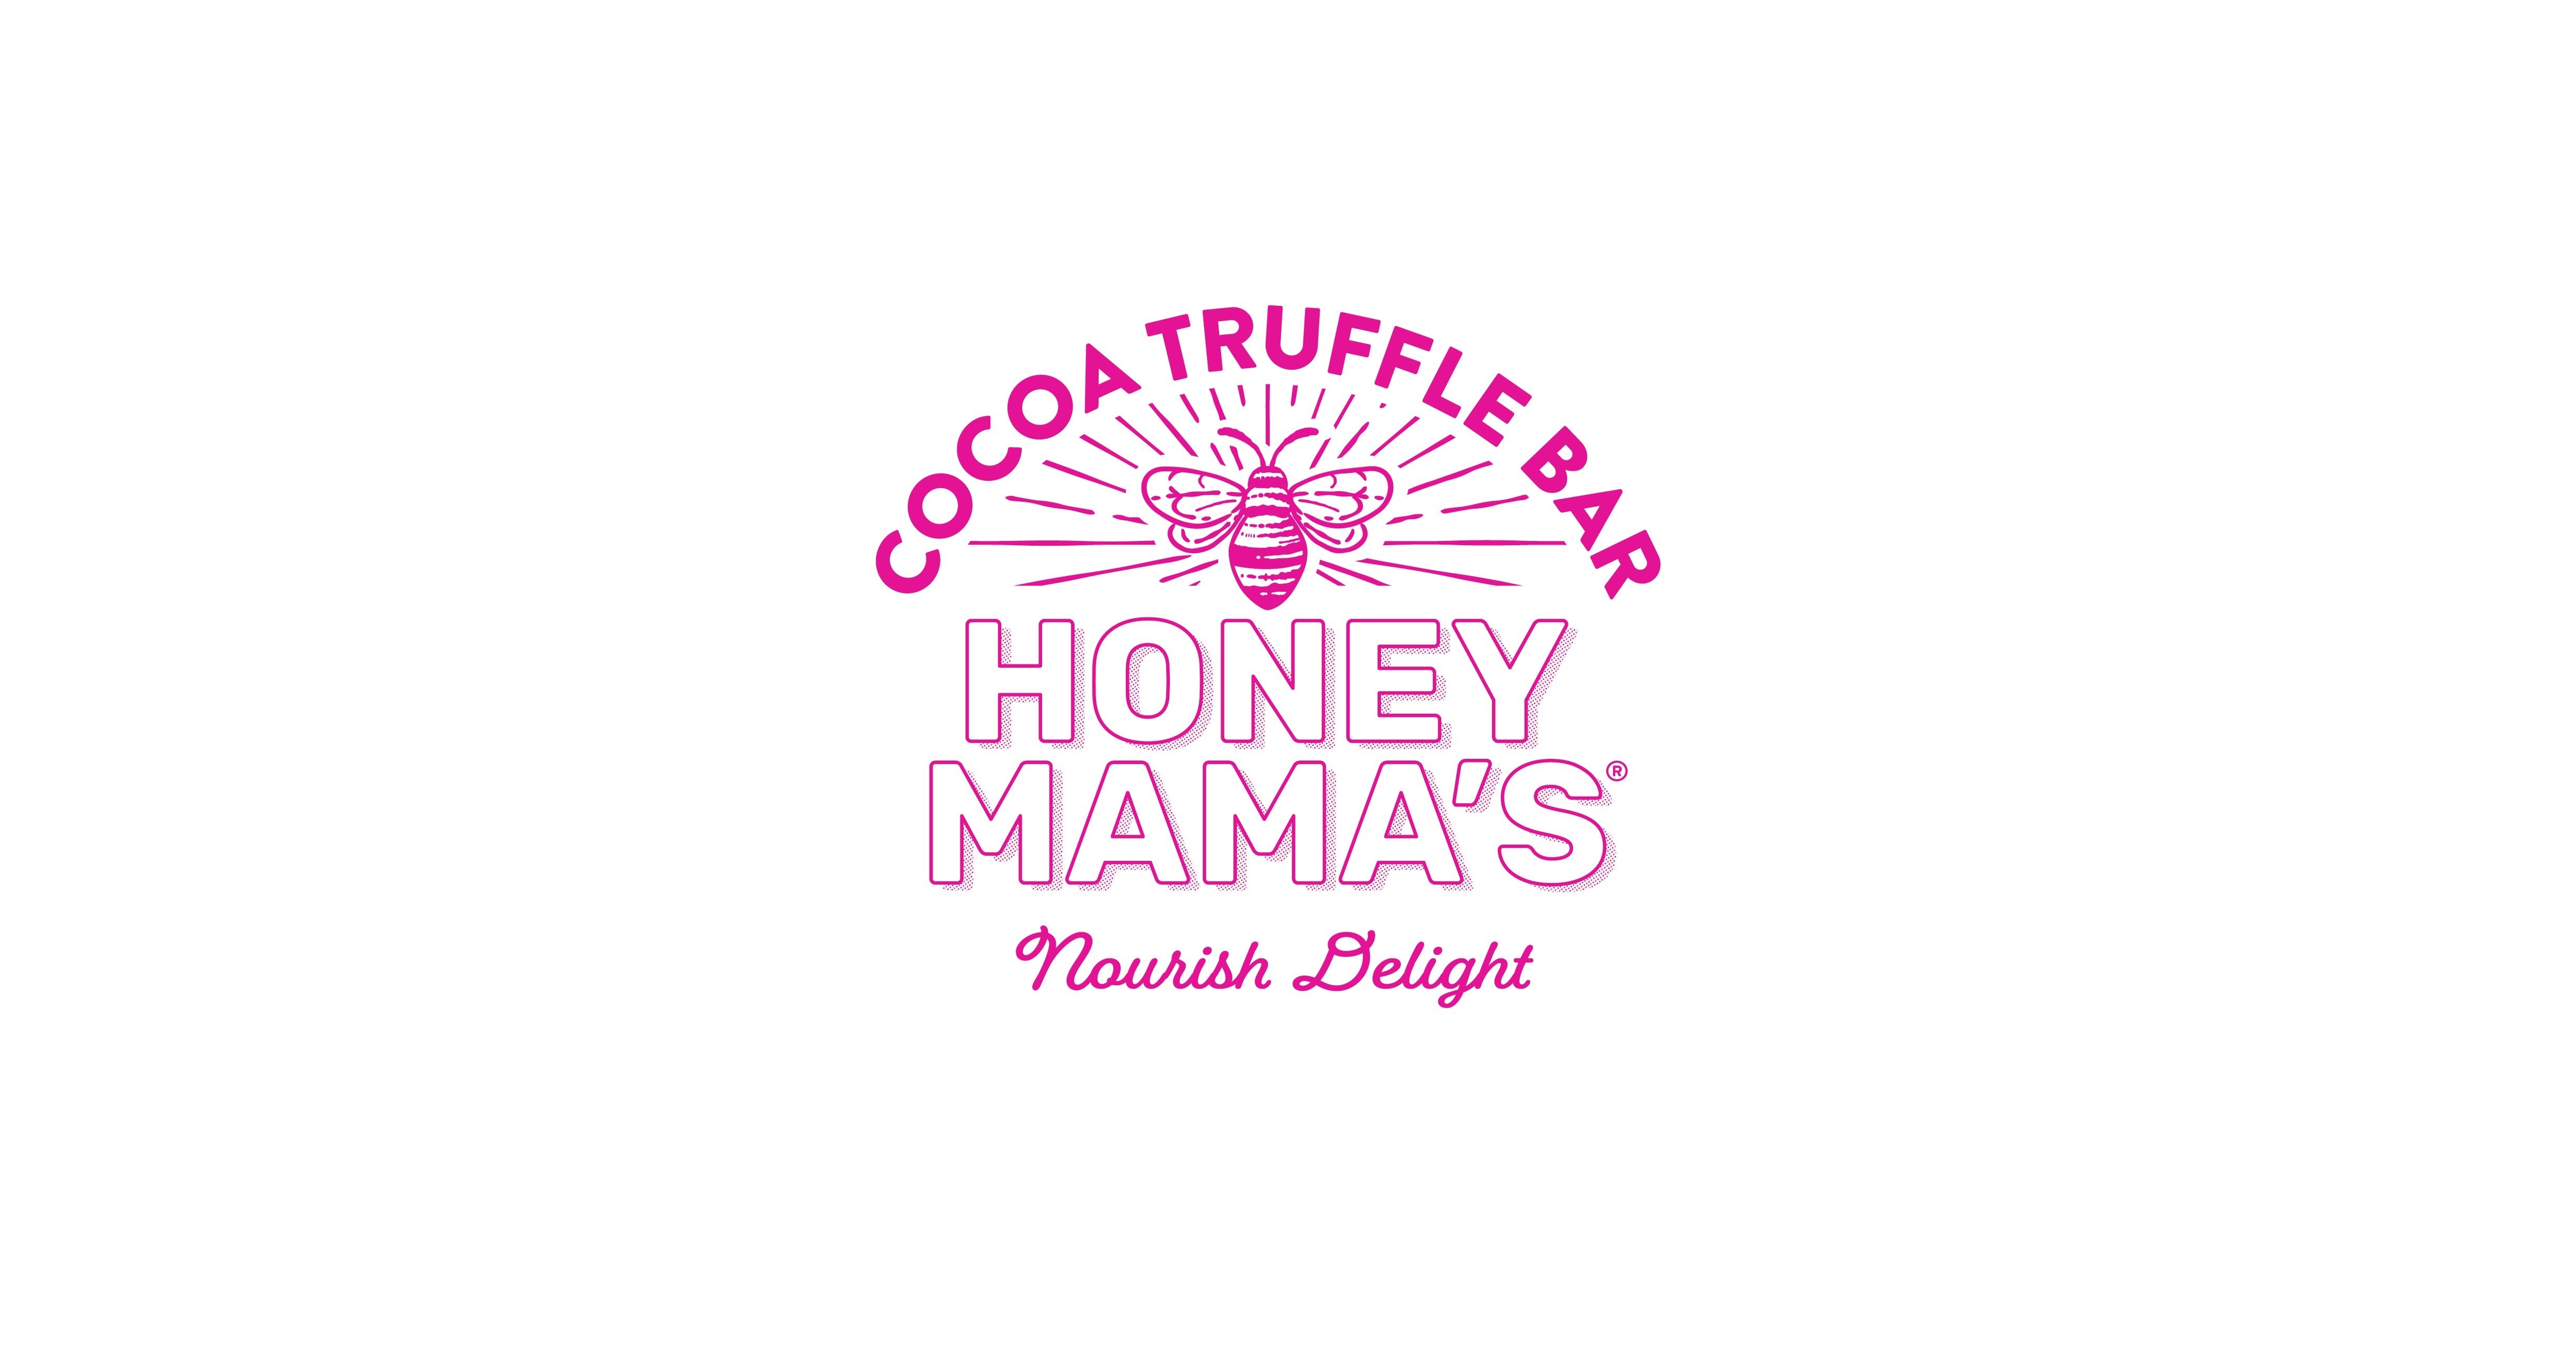 Cake-Inspired Truffle Bar Treats : Honey Mama's truffle bars